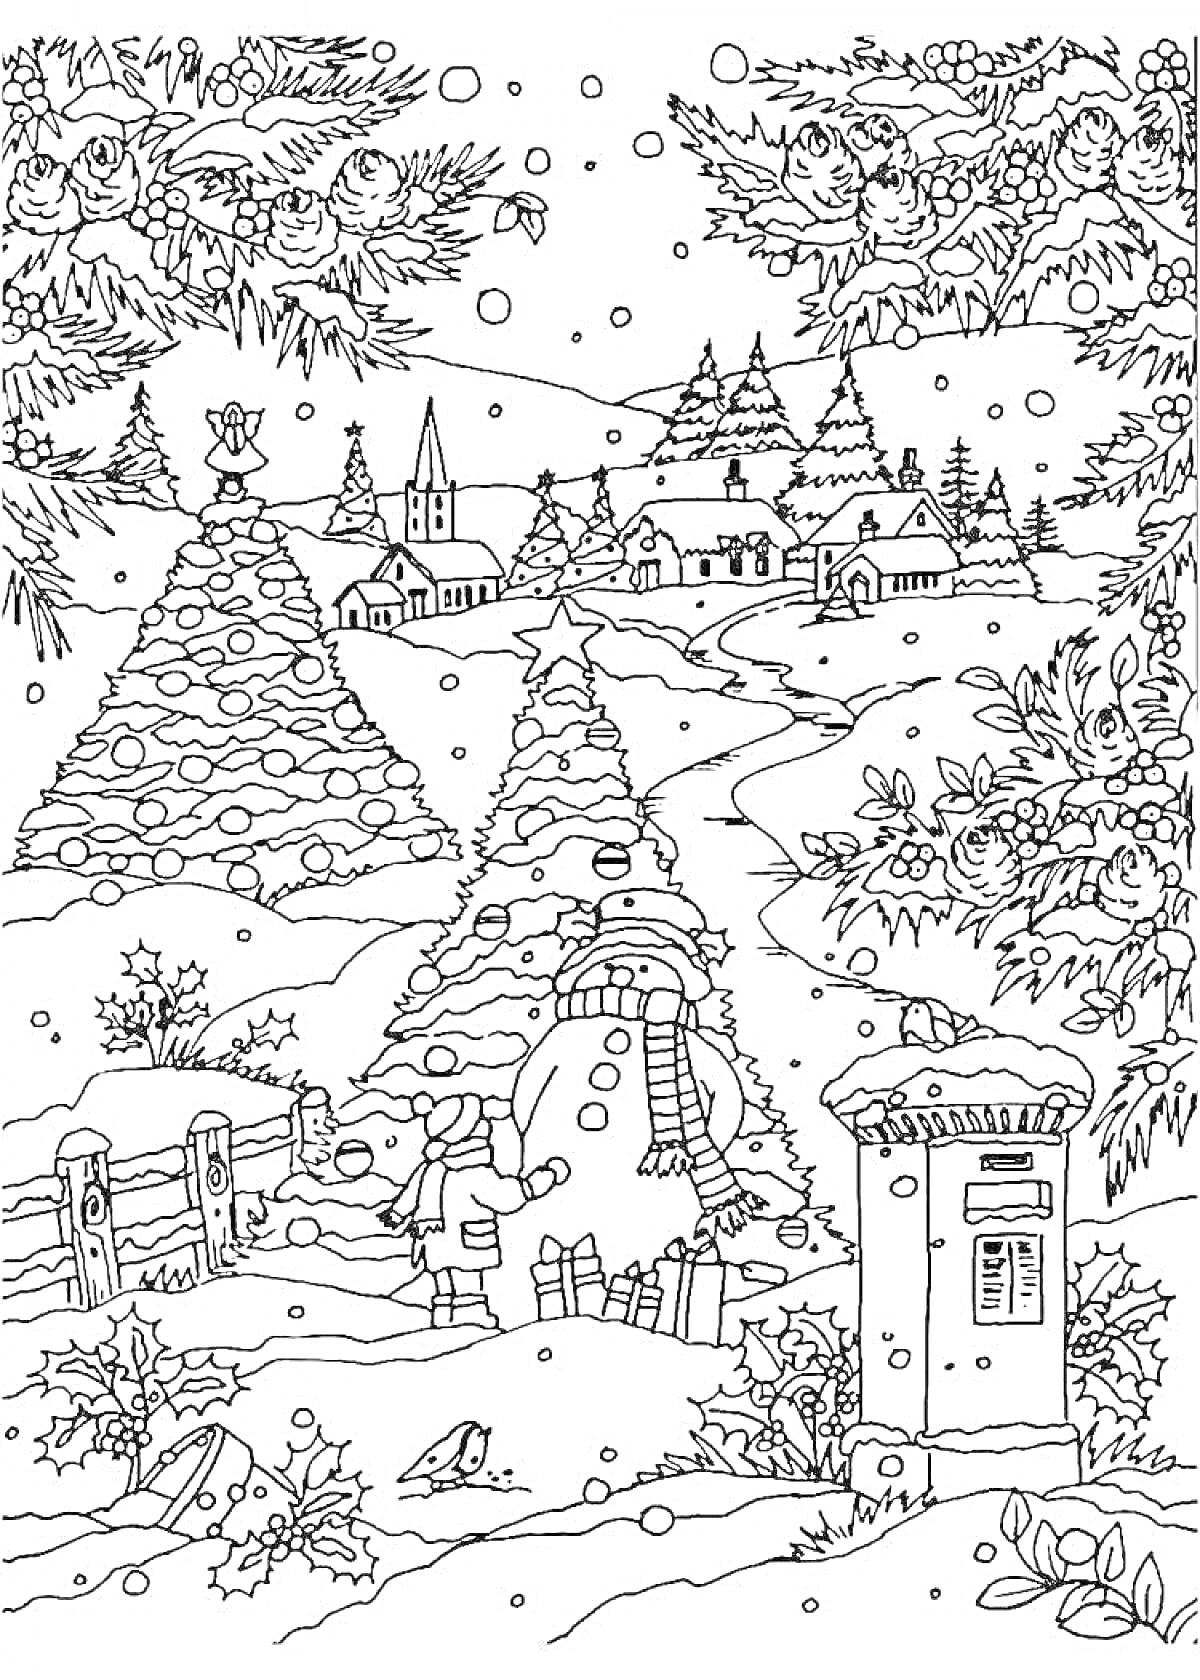 Раскраска новогодний пейзаж с деревней, снежной бабой, елками, ангелами и почтовым ящиком